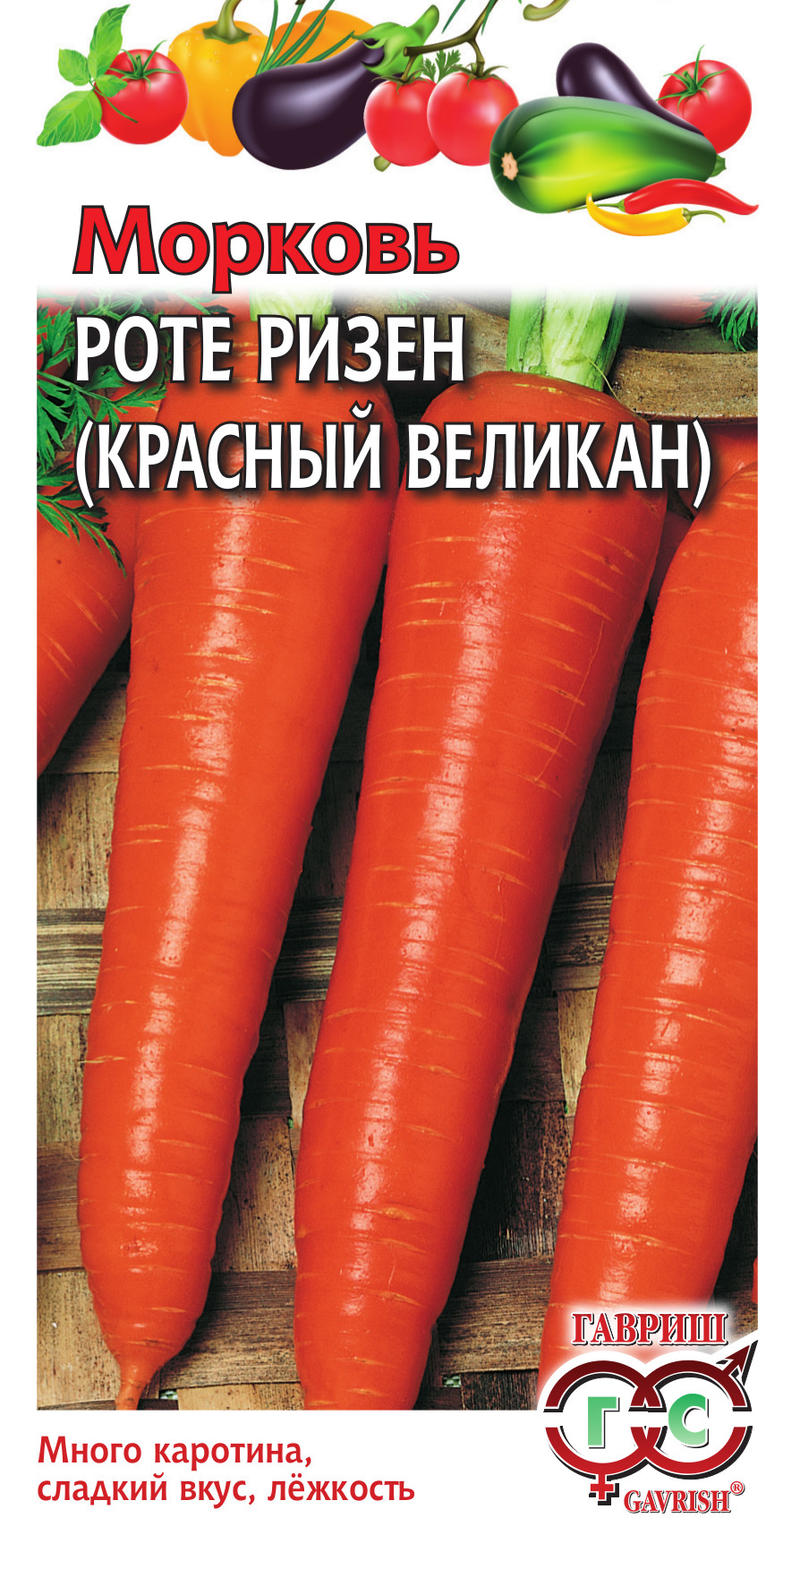 Морковь Красный Великан (Роте Ризен) позднеспелая 2гр Гавриш/БП